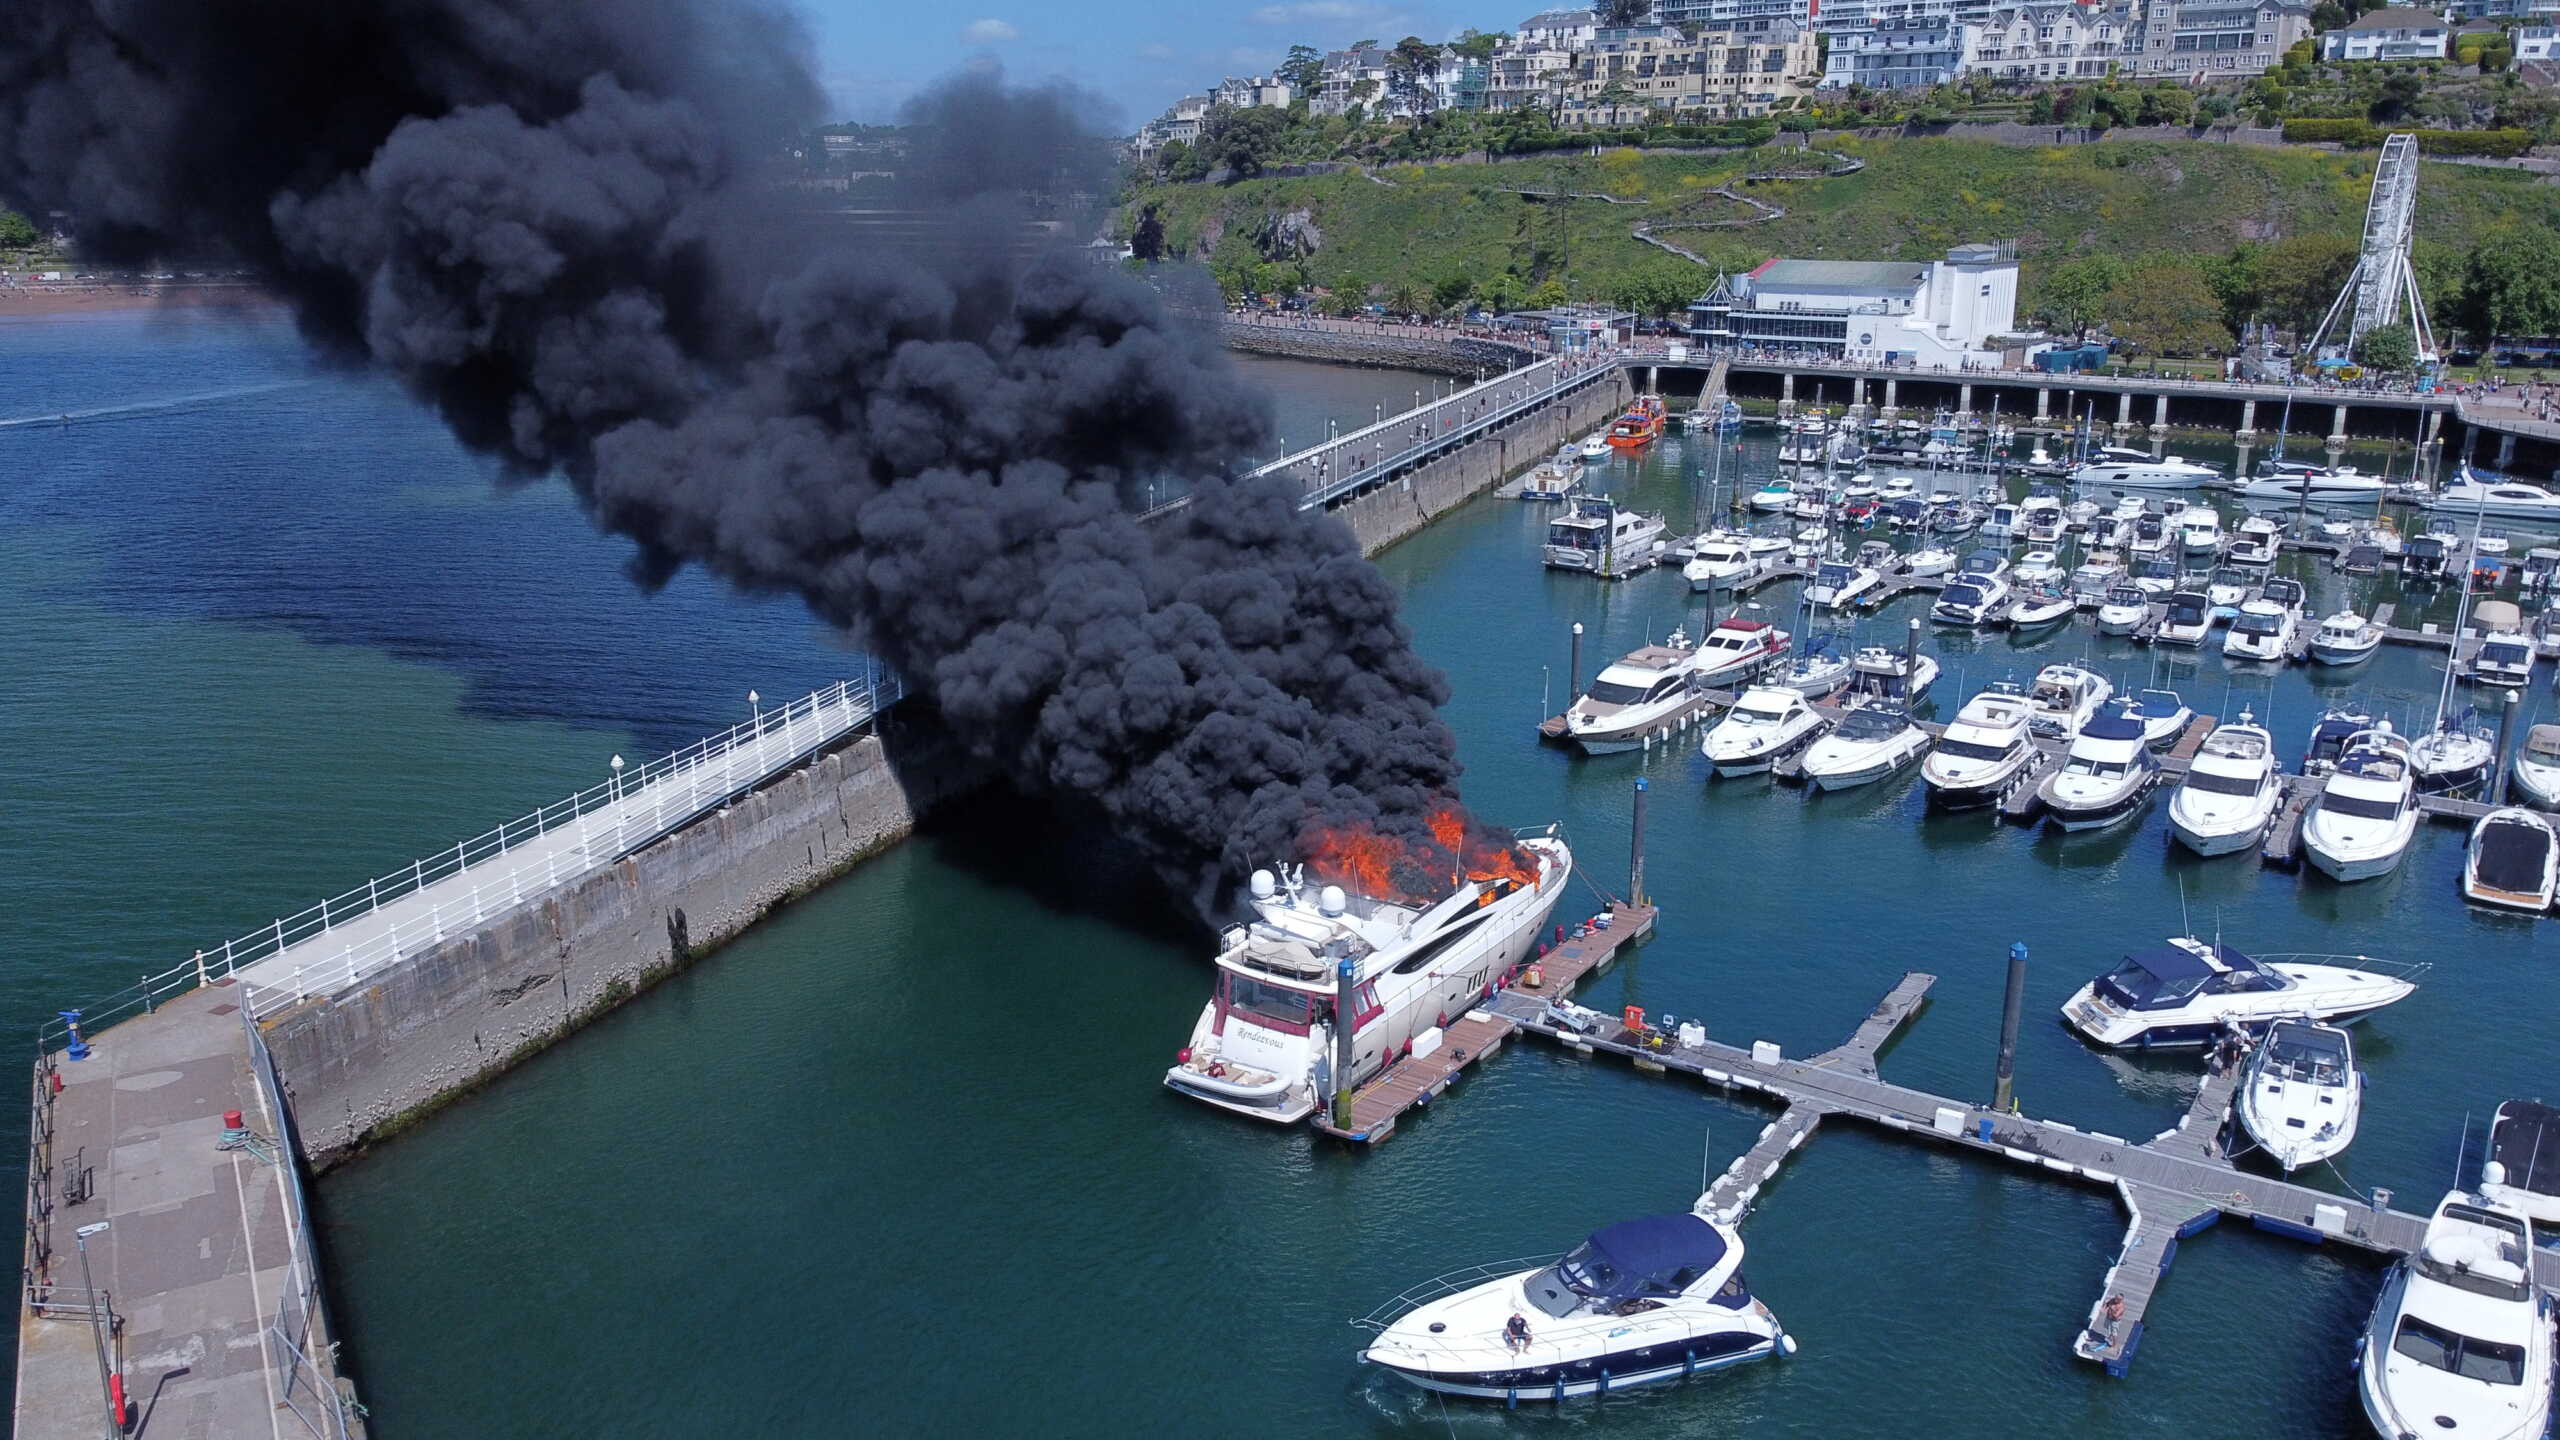 Βρετανία: Μεγάλη έκρηξη σε πολυτελές σκάφος στο λιμάνι του Ντέιβον